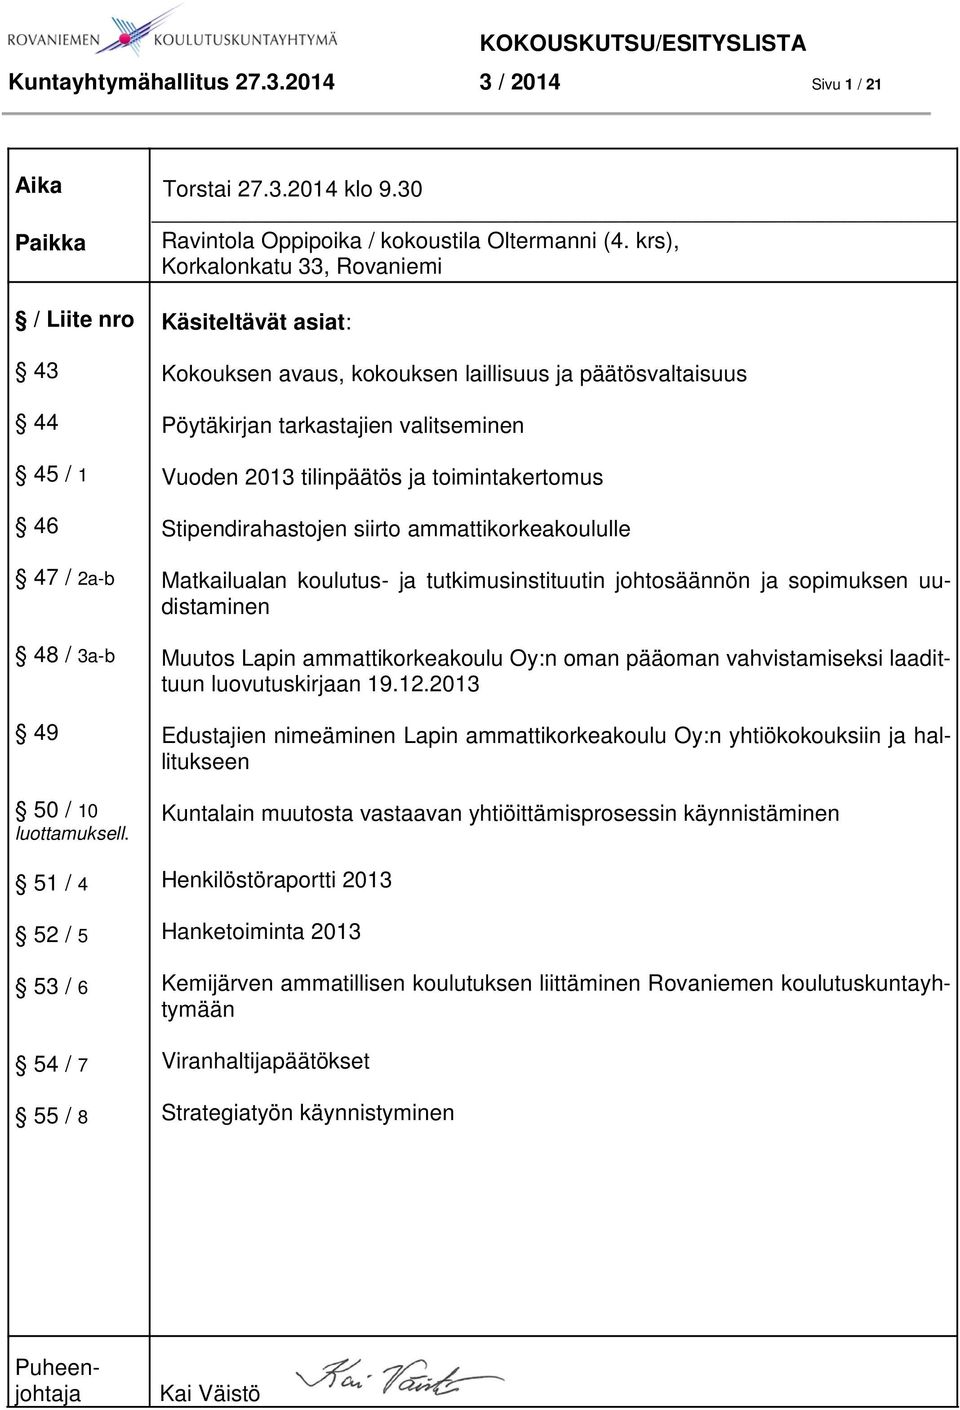 krs), Korkalonkatu 33, Rovaniemi Käsiteltävät asiat: Kokouksen avaus, kokouksen laillisuus ja päätösvaltaisuus Pöytäkirjan tarkastajien valitseminen Vuoden 2013 tilinpäätös ja toimintakertomus